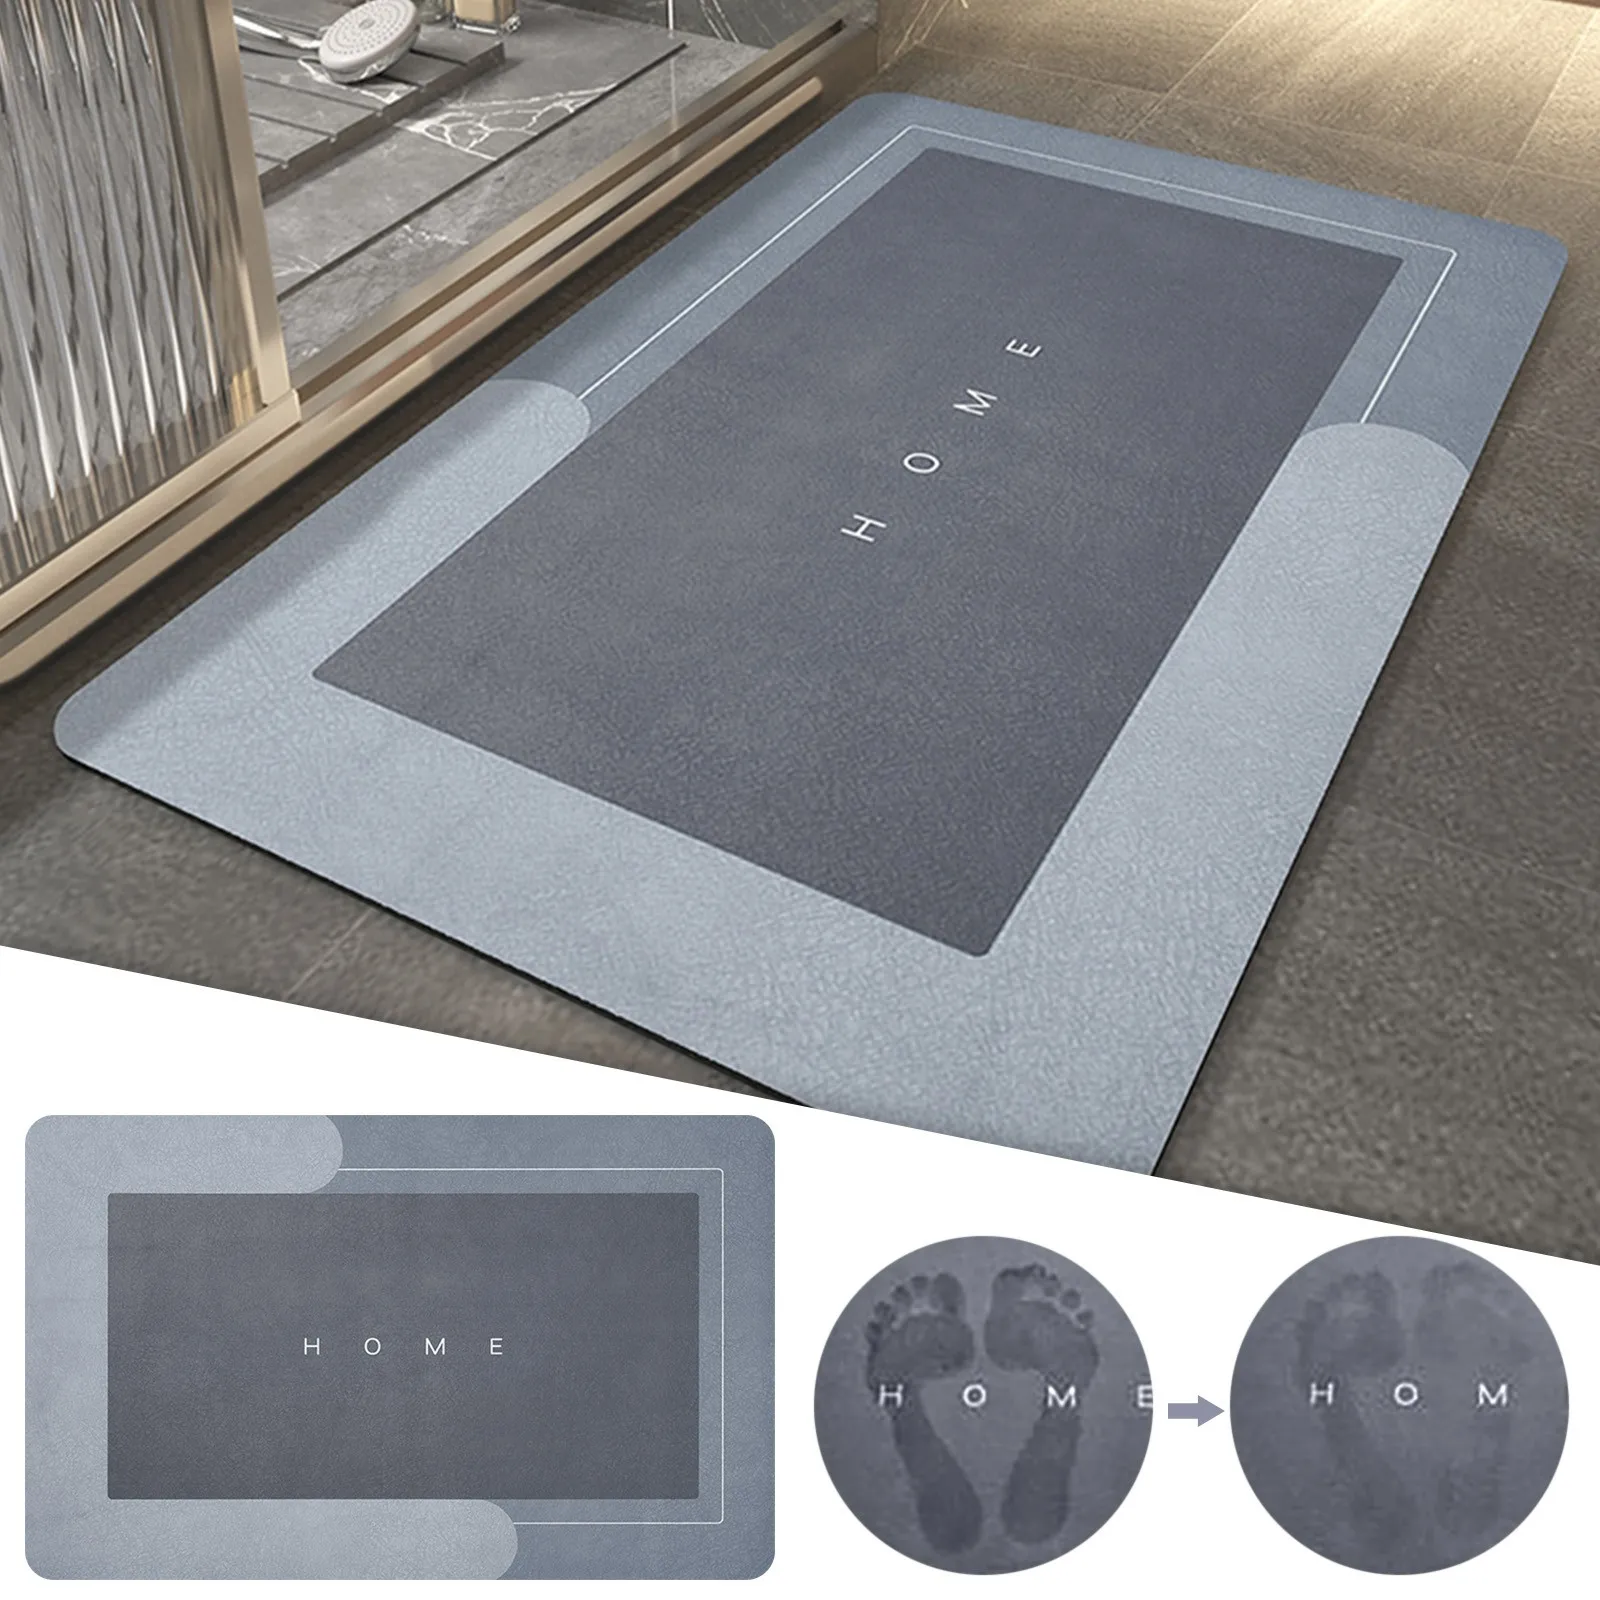 

Super Absorbent Floor Mat, Non-Slip Soft Microfiber Memory Foam Bath Mat, Quick-Dry Absorbent Resist Dirt Entrance Rug Bathroom